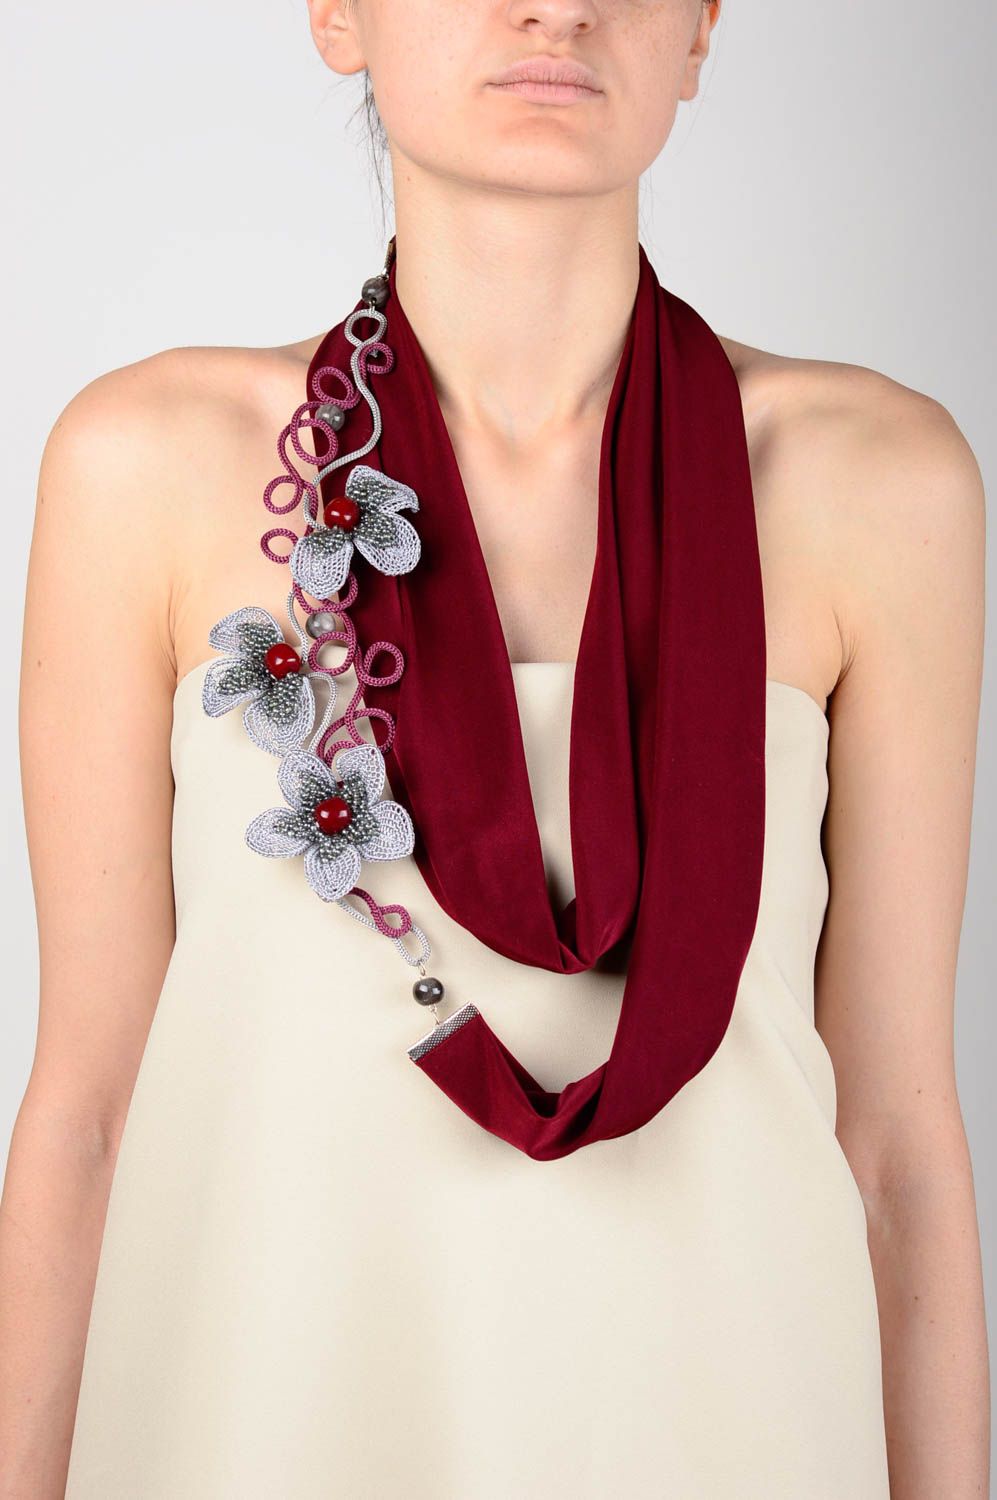 Шарф ожерелье бордовый шарф ручной работы трикотажный шарф очаровательный  фото 5